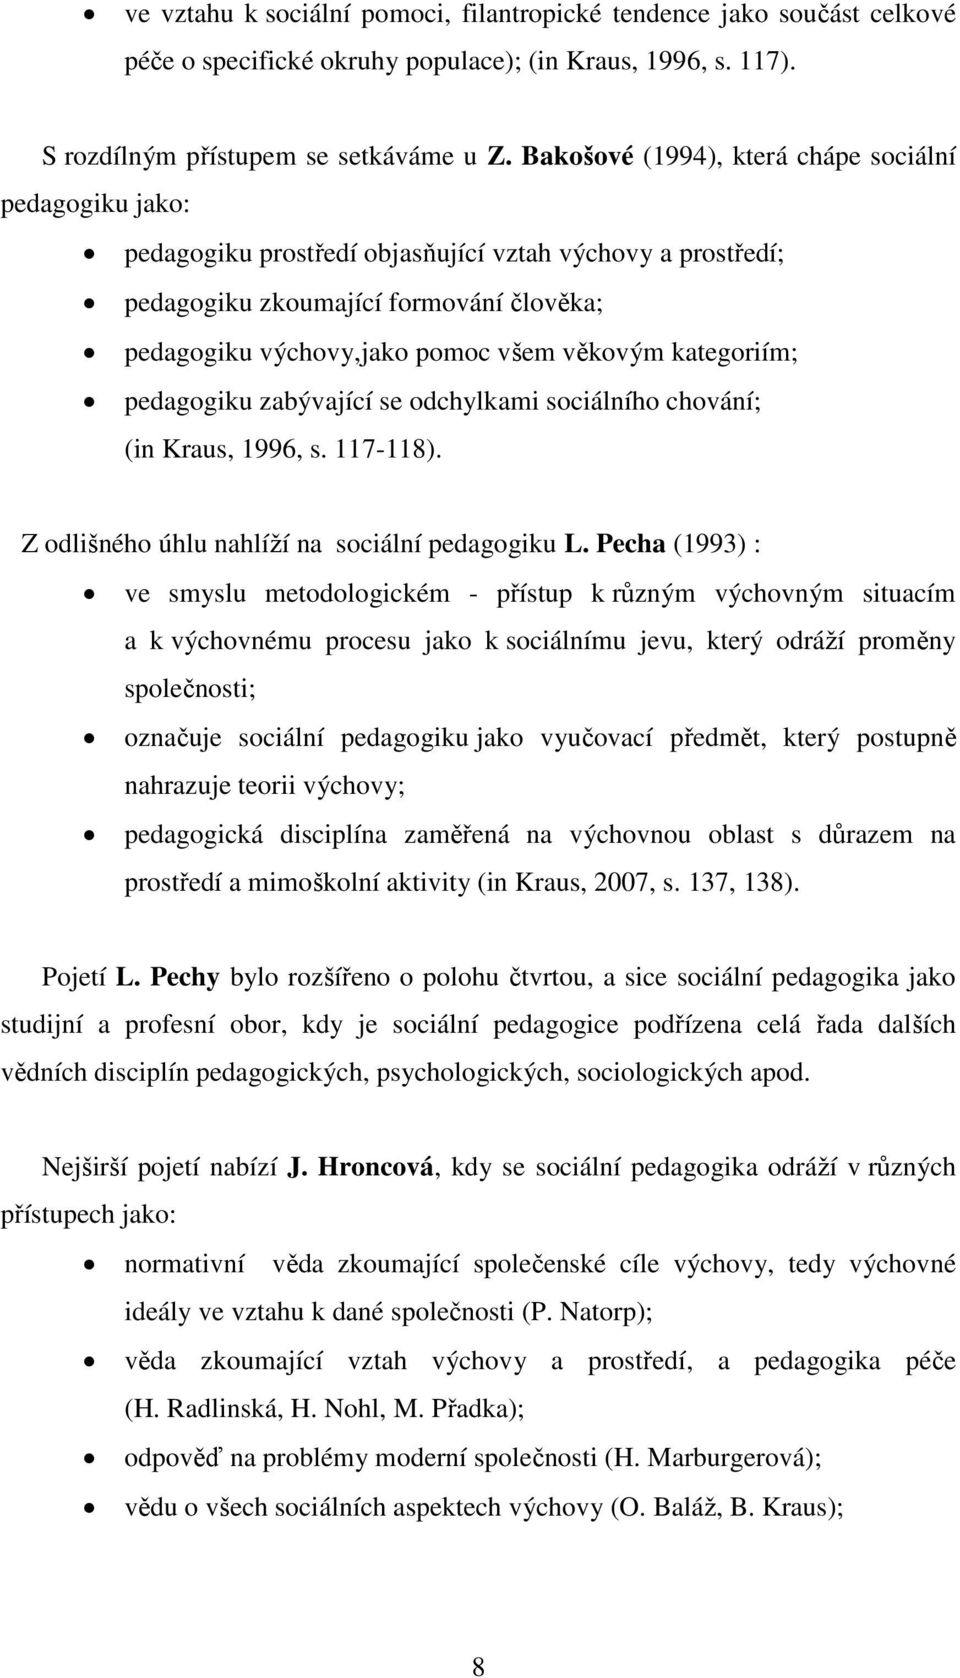 kategoriím; pedagogiku zabývající se odchylkami sociálního chování; (in Kraus, 1996, s. 117-118). Z odlišného úhlu nahlíží na sociální pedagogiku L.